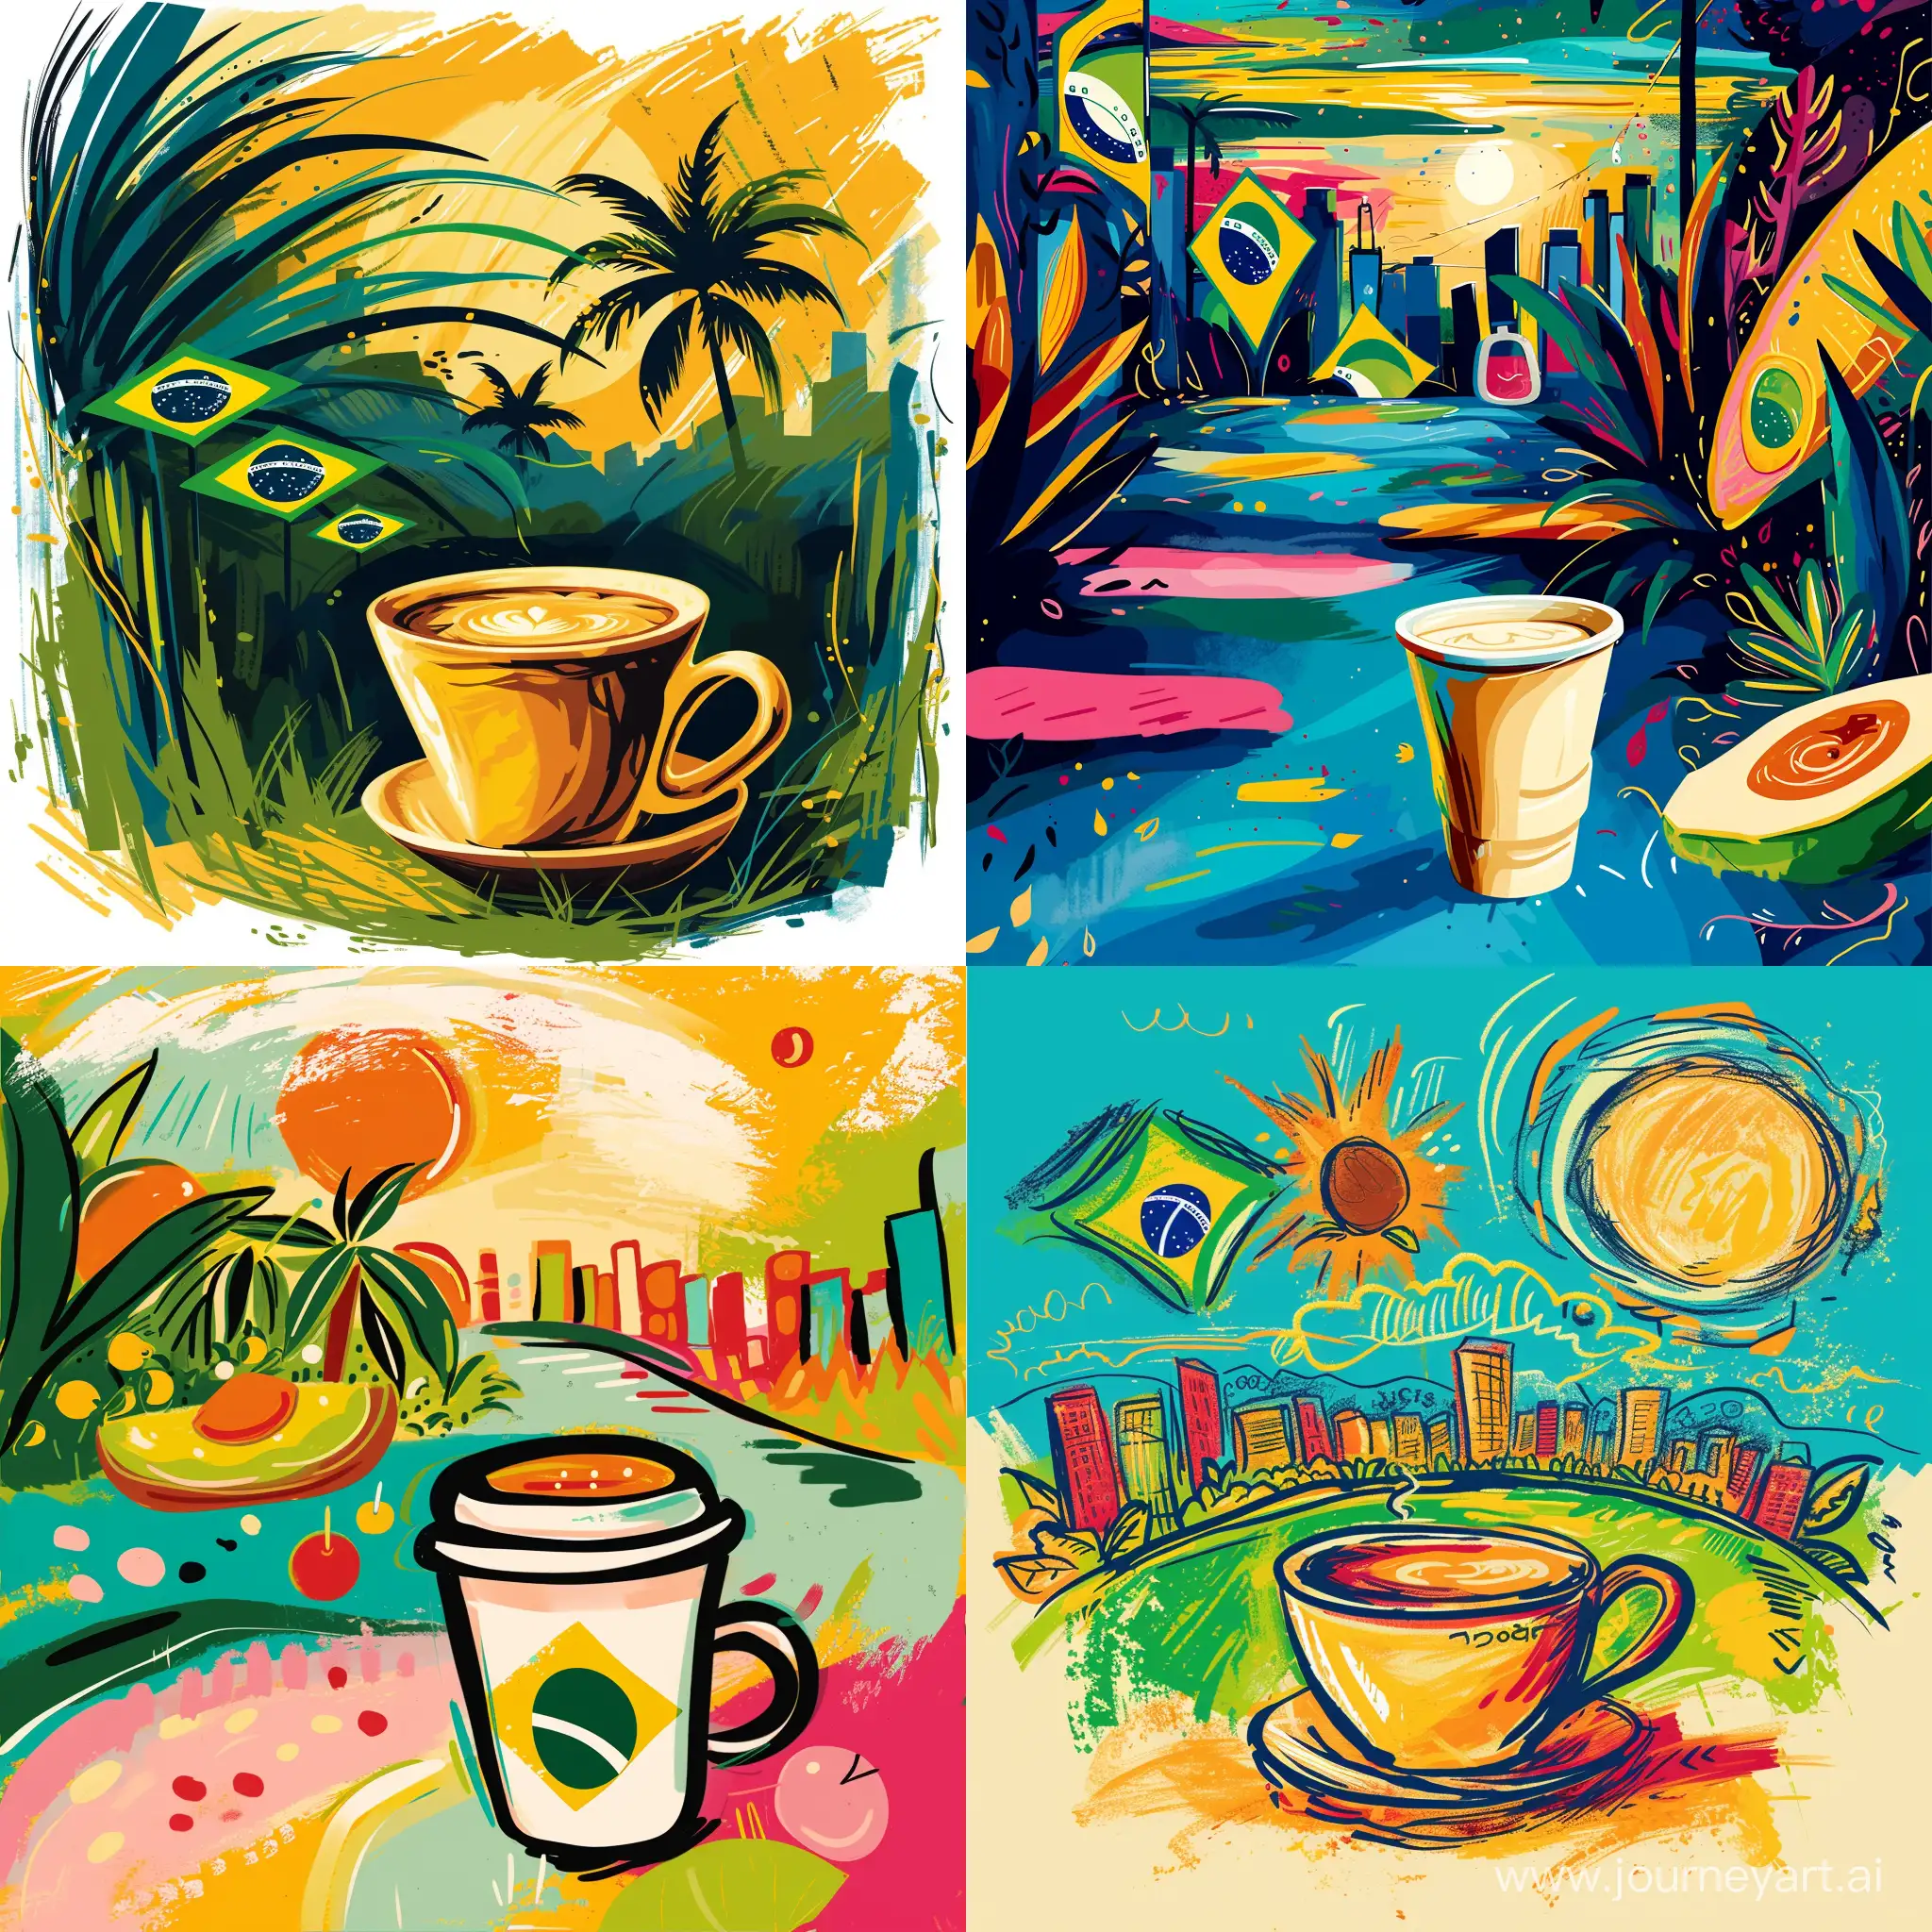 яркая и сочная иллюстрация нарисованная кистями в  Photoshop из символов Бразилии и чашки с кофе на переднем плане в стиле абстракция